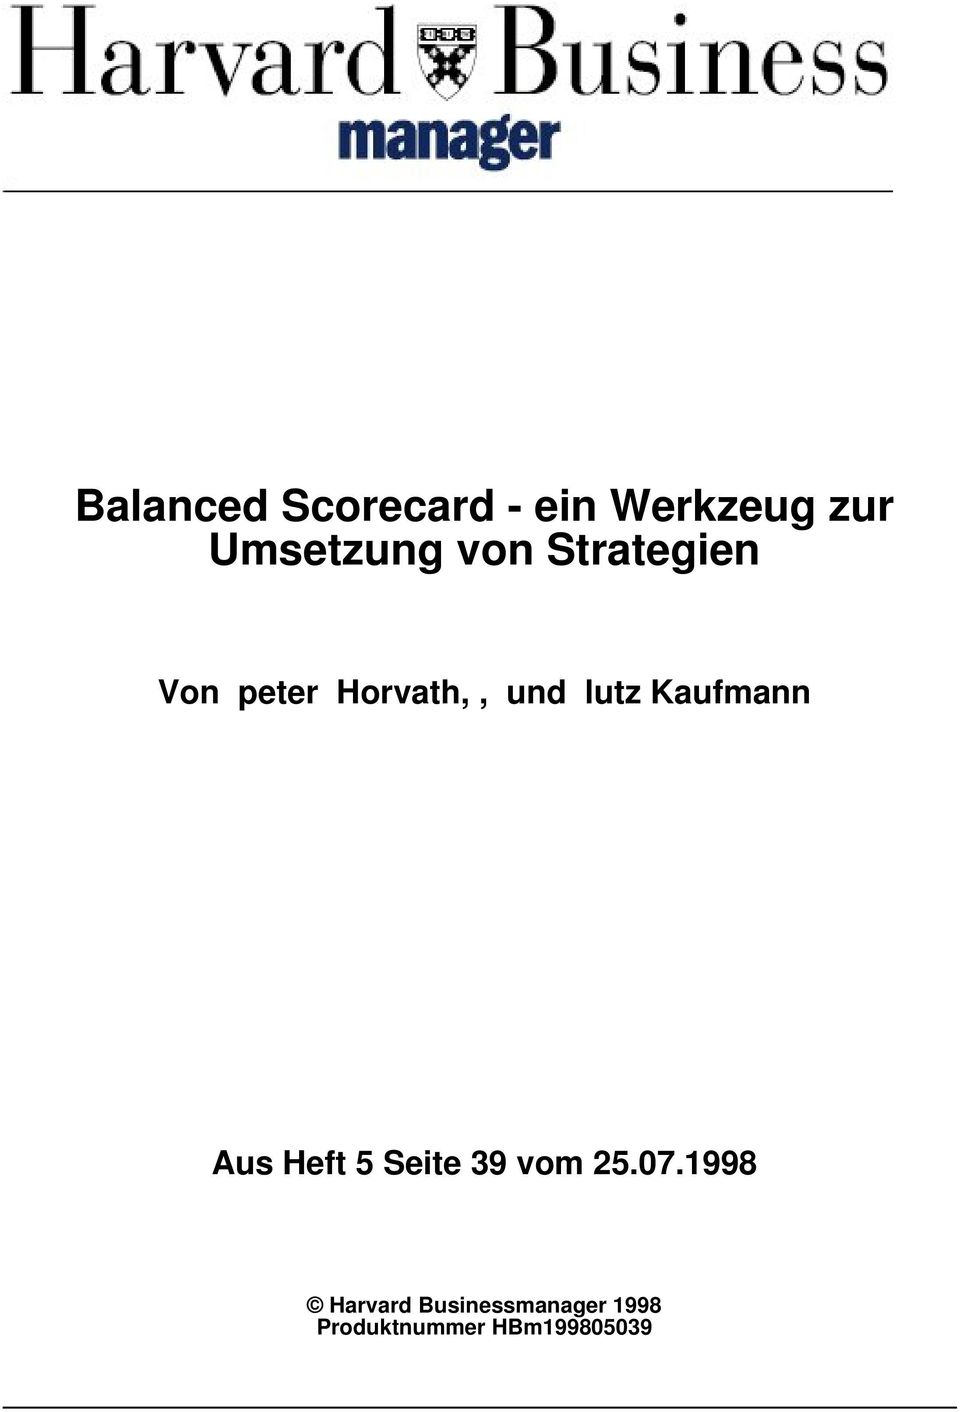 Kaufmann Aus Heft 5 Seite 39 vom 25.07.